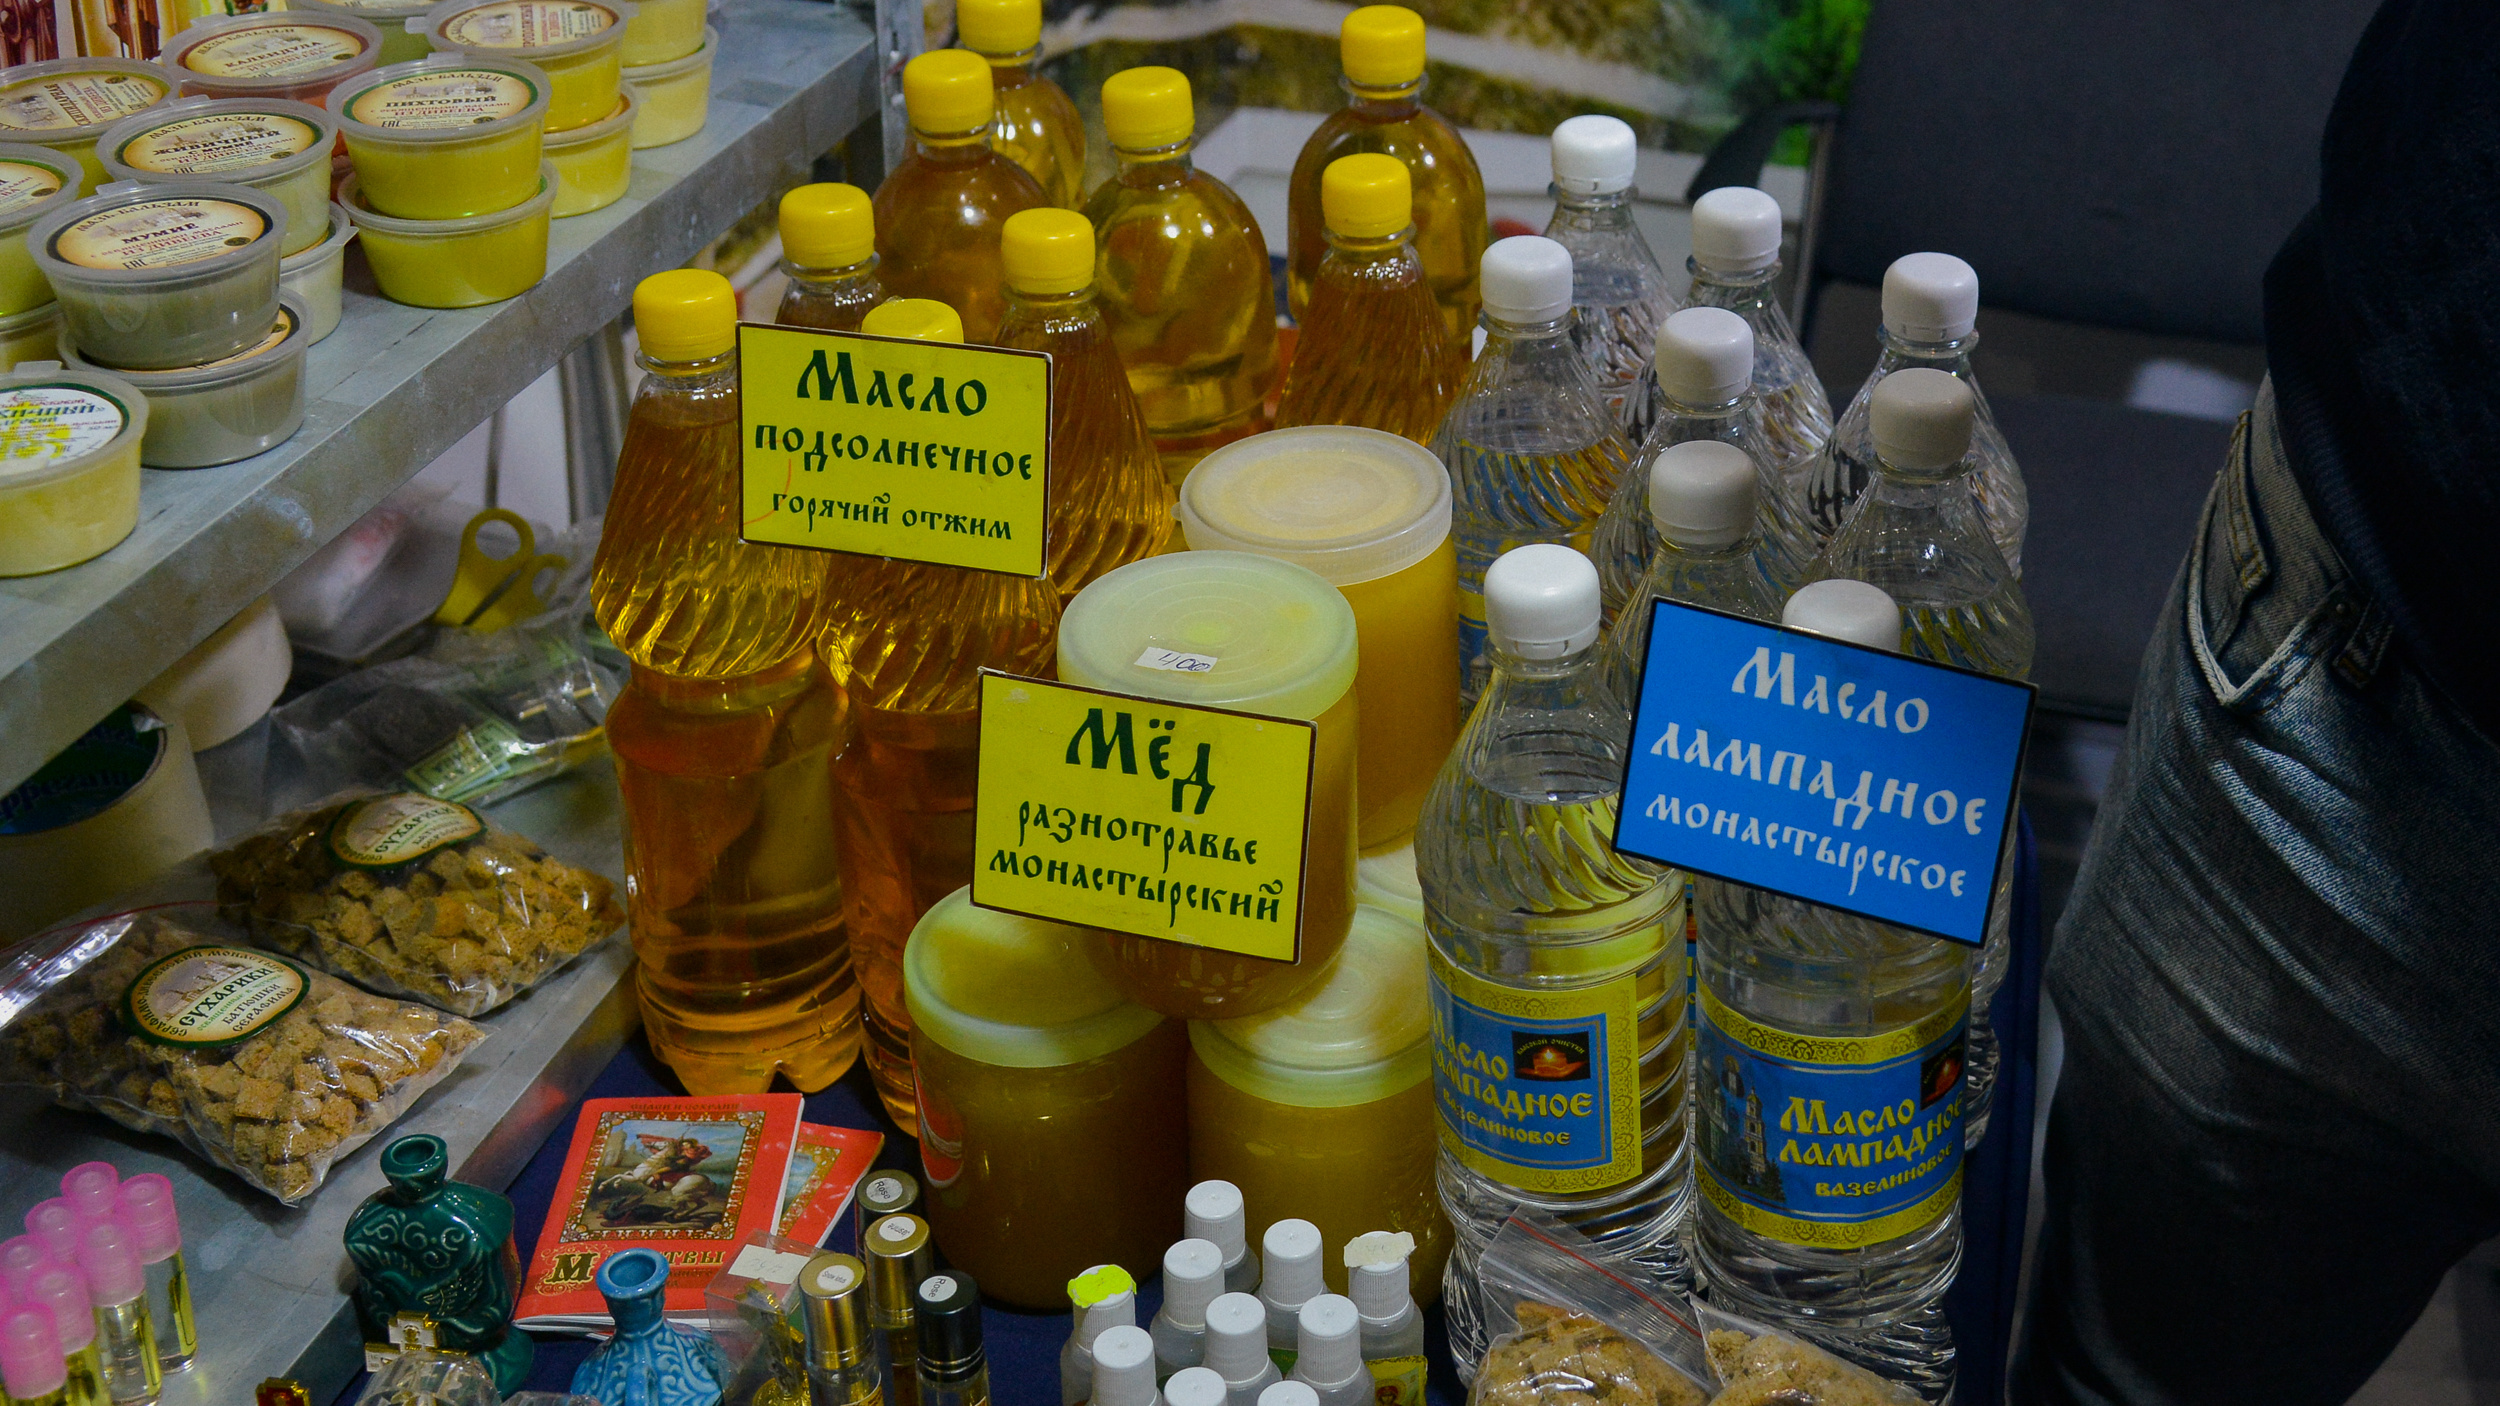 Каштановый — 2000 рублей за килограмм: какой мед еще и за сколько продают на ярмарке в Архангельске